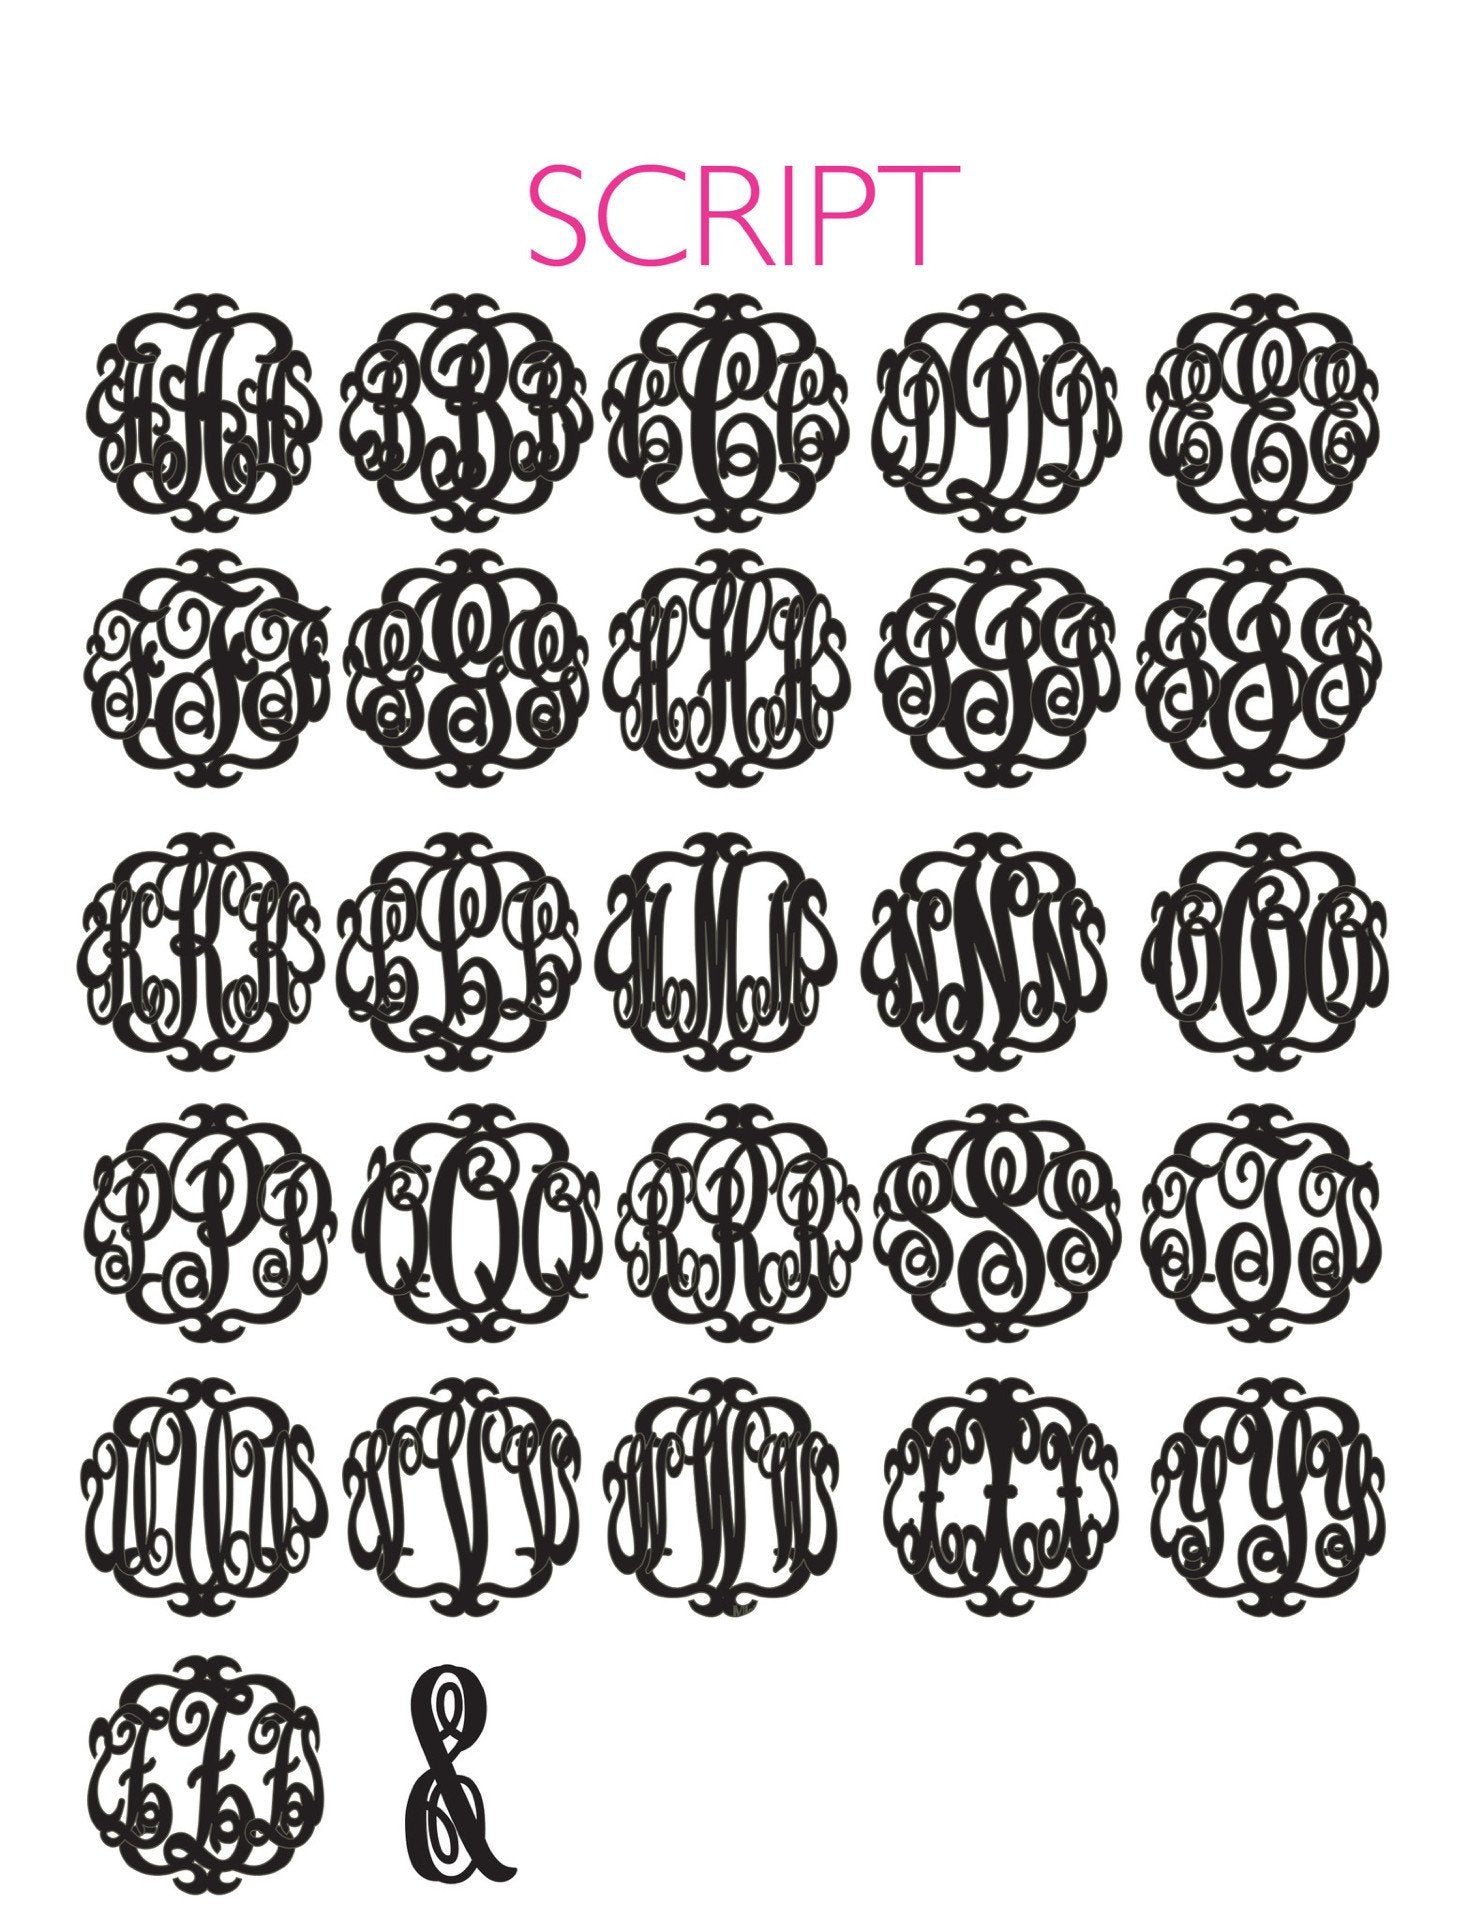 Sample "TML" Paris Monogram Necklace